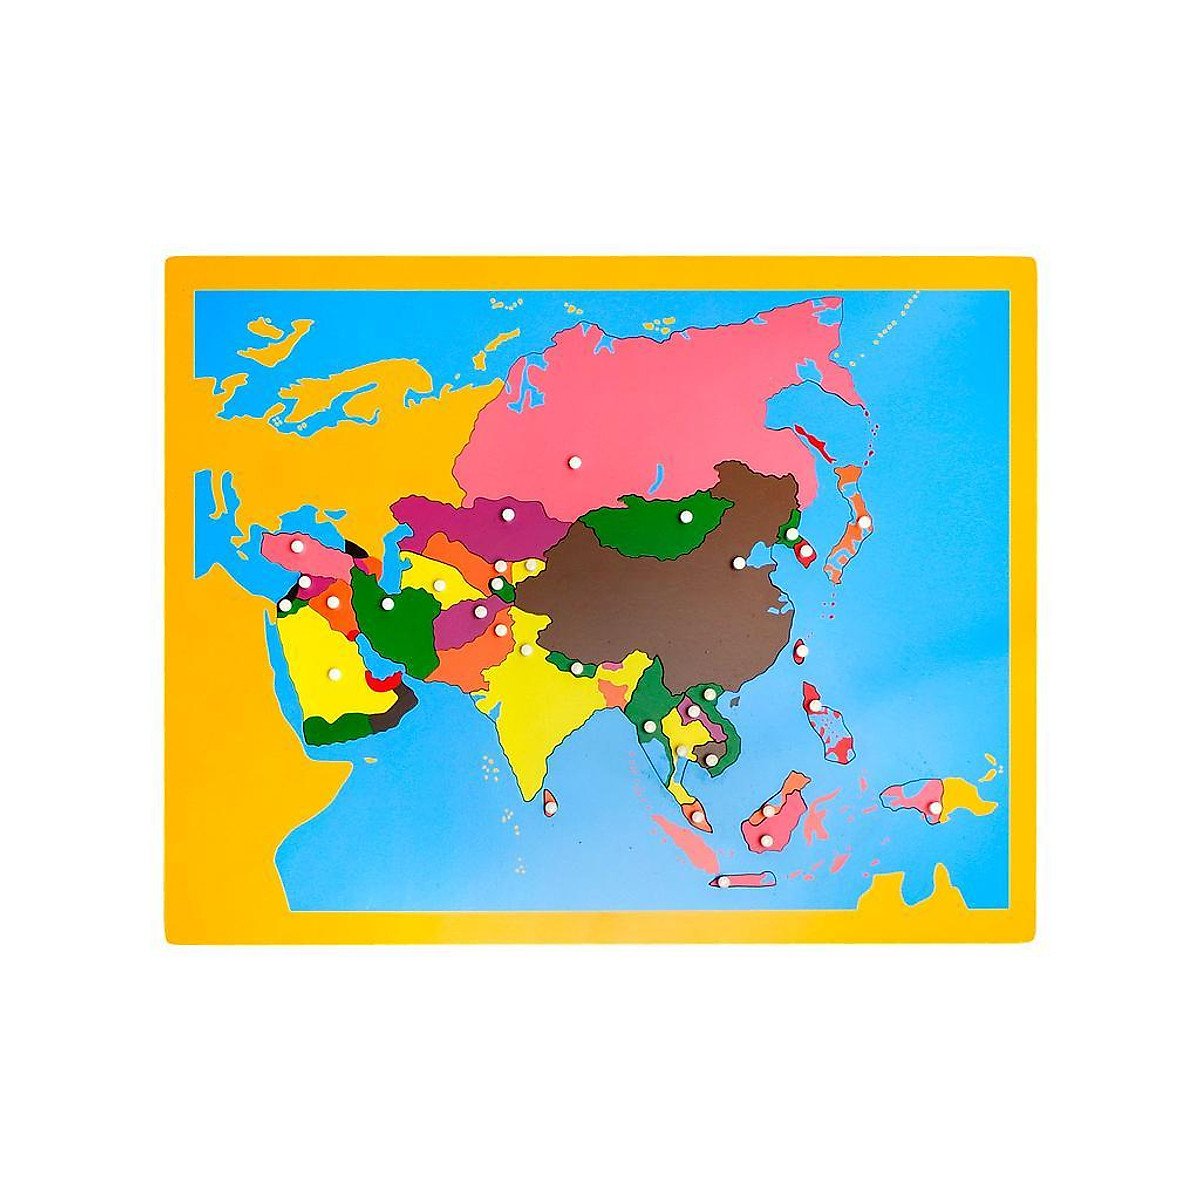 Đồ chơi trẻ em Ghép hình bản đồ châu Á 3D giúp trẻ em hiểu biết về các quốc gia và thành phố châu Á một cách thú vị. Chúng tôi tự hào giới thiệu bản đồ ghép hình 3D châu Á cung cấp đầy đủ thông tin về những nơi đặc biệt và kiến thức cơ bản về địa lý. Đây là một món quà tuyệt vời dành cho các em nhỏ.